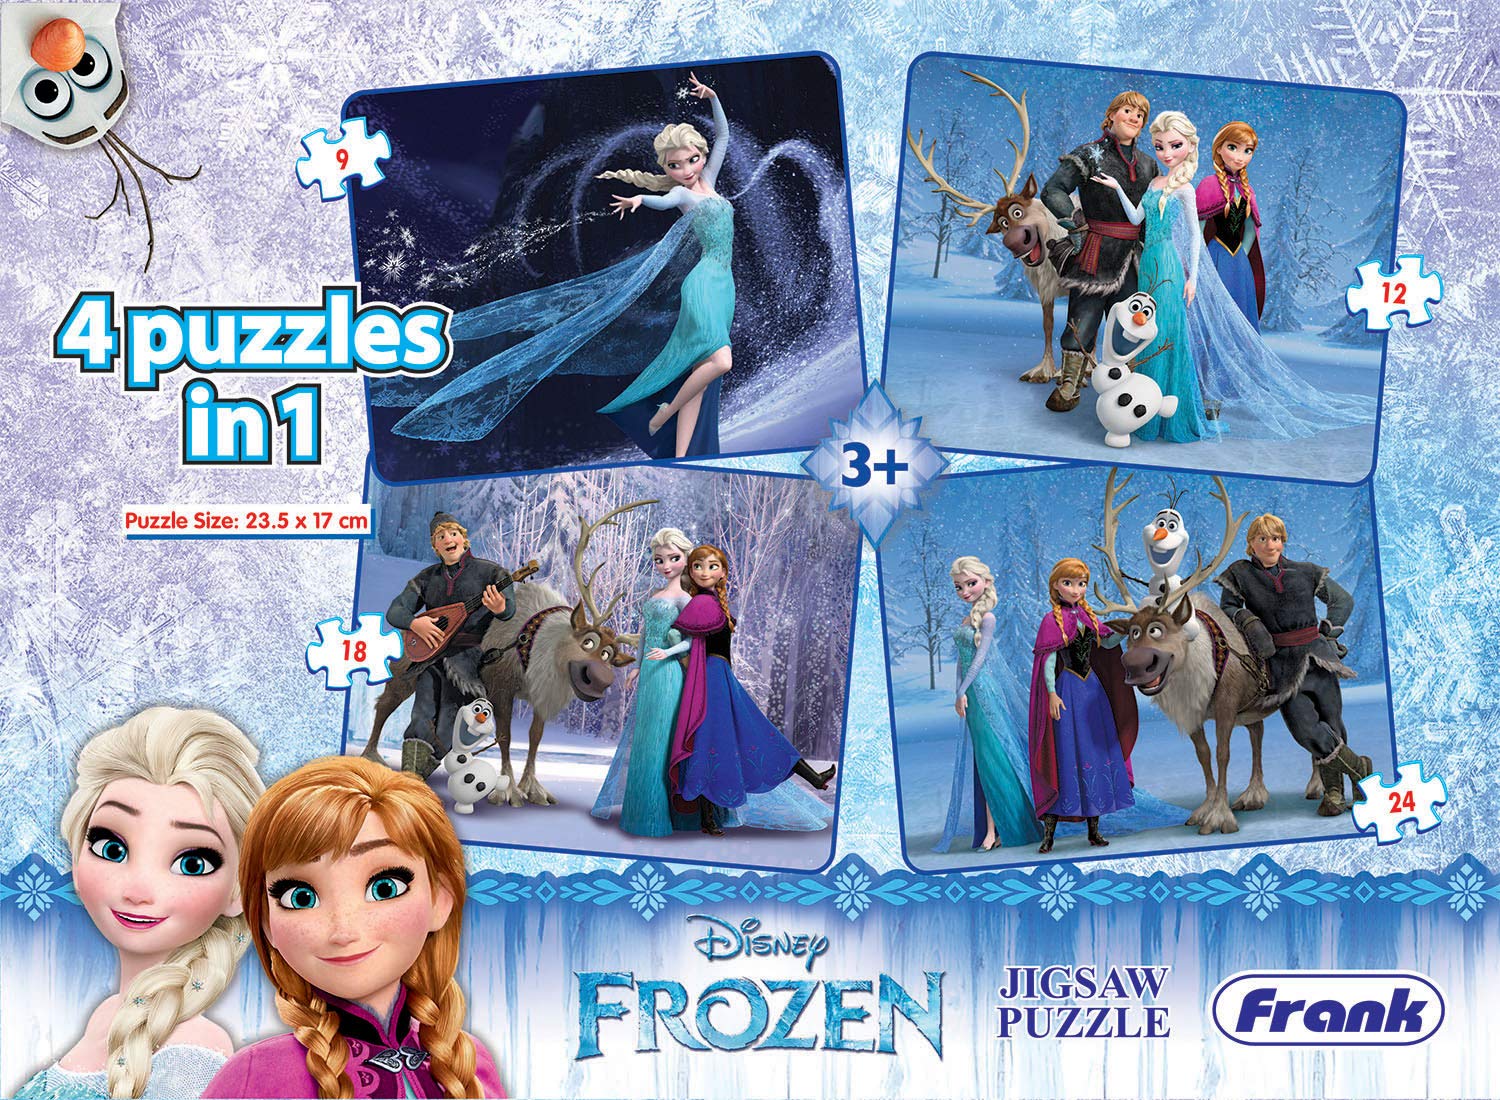 Disney's Frozen Puzzle